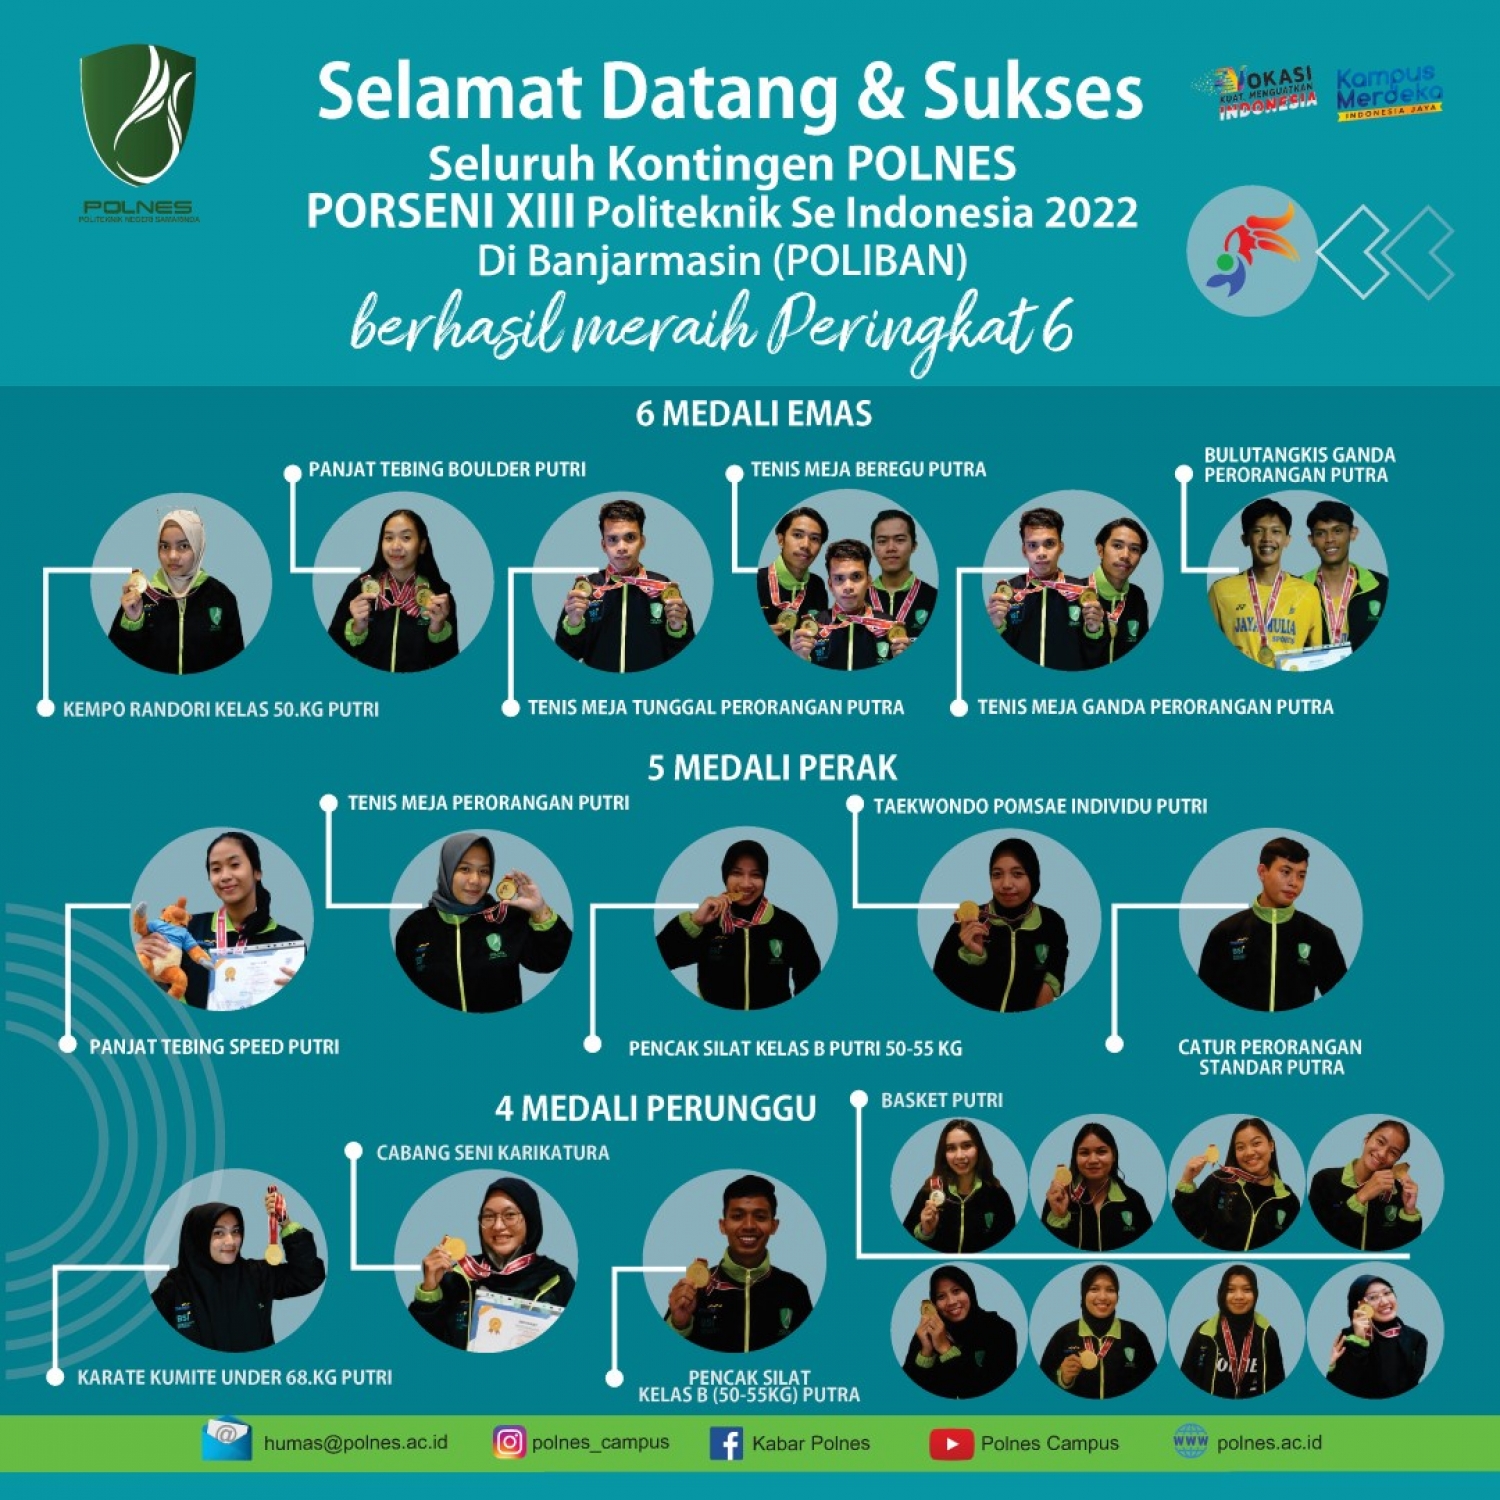 Selamat Datang dan Sukses  Kontingen POLNES, PORSENI XIII Politeknik Se Indonesia 2022 Di Banjarmasin (POLIBAN) Peraih Peringkat 6